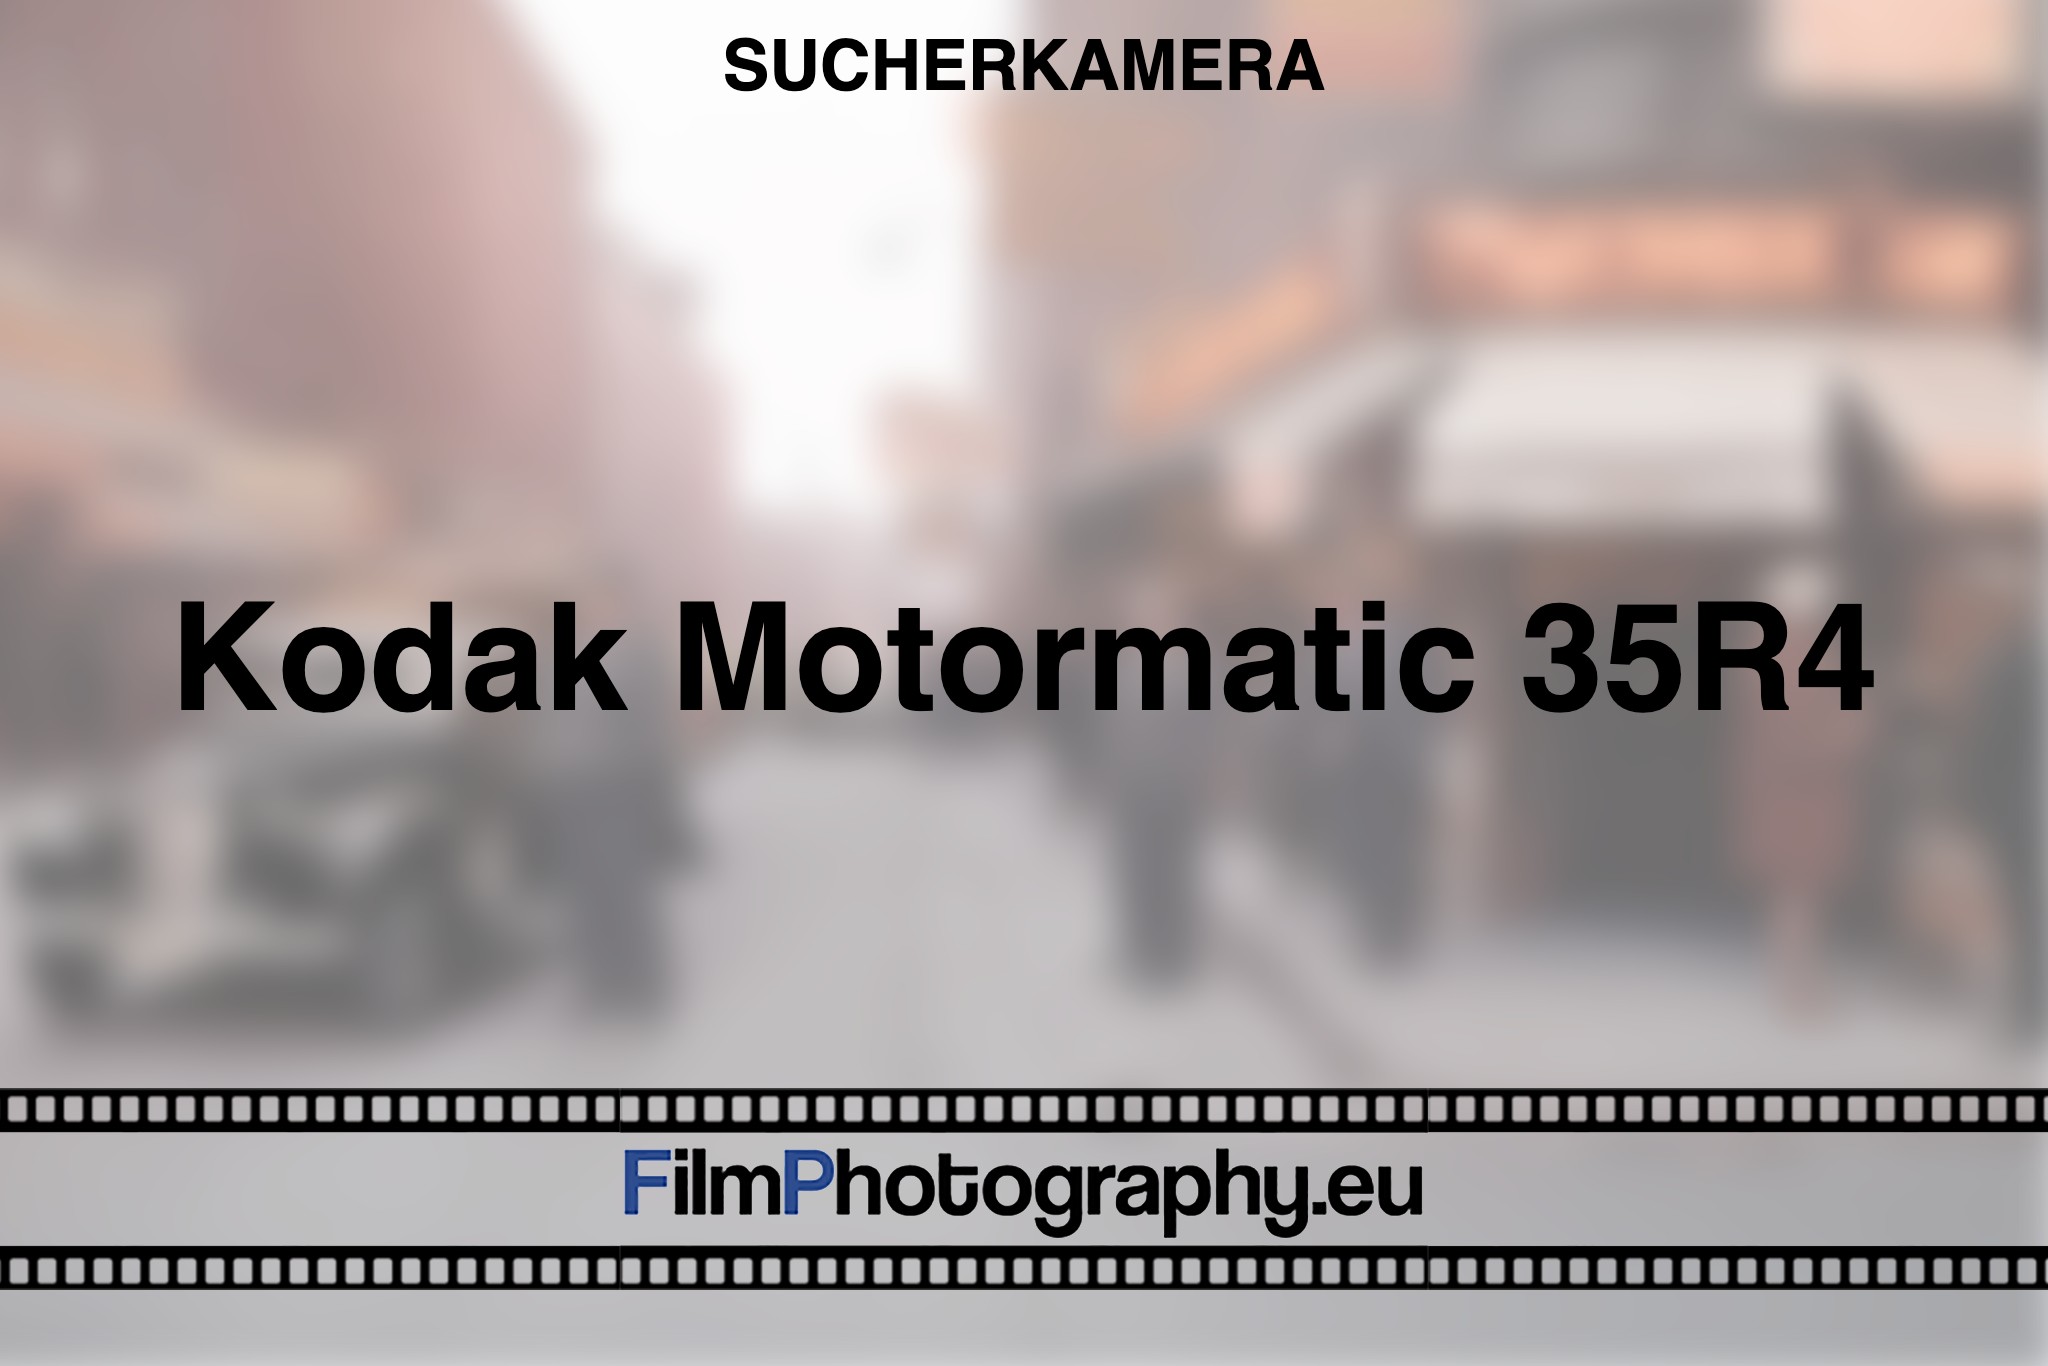 kodak-motormatic-35r4-sucherkamera-bnv